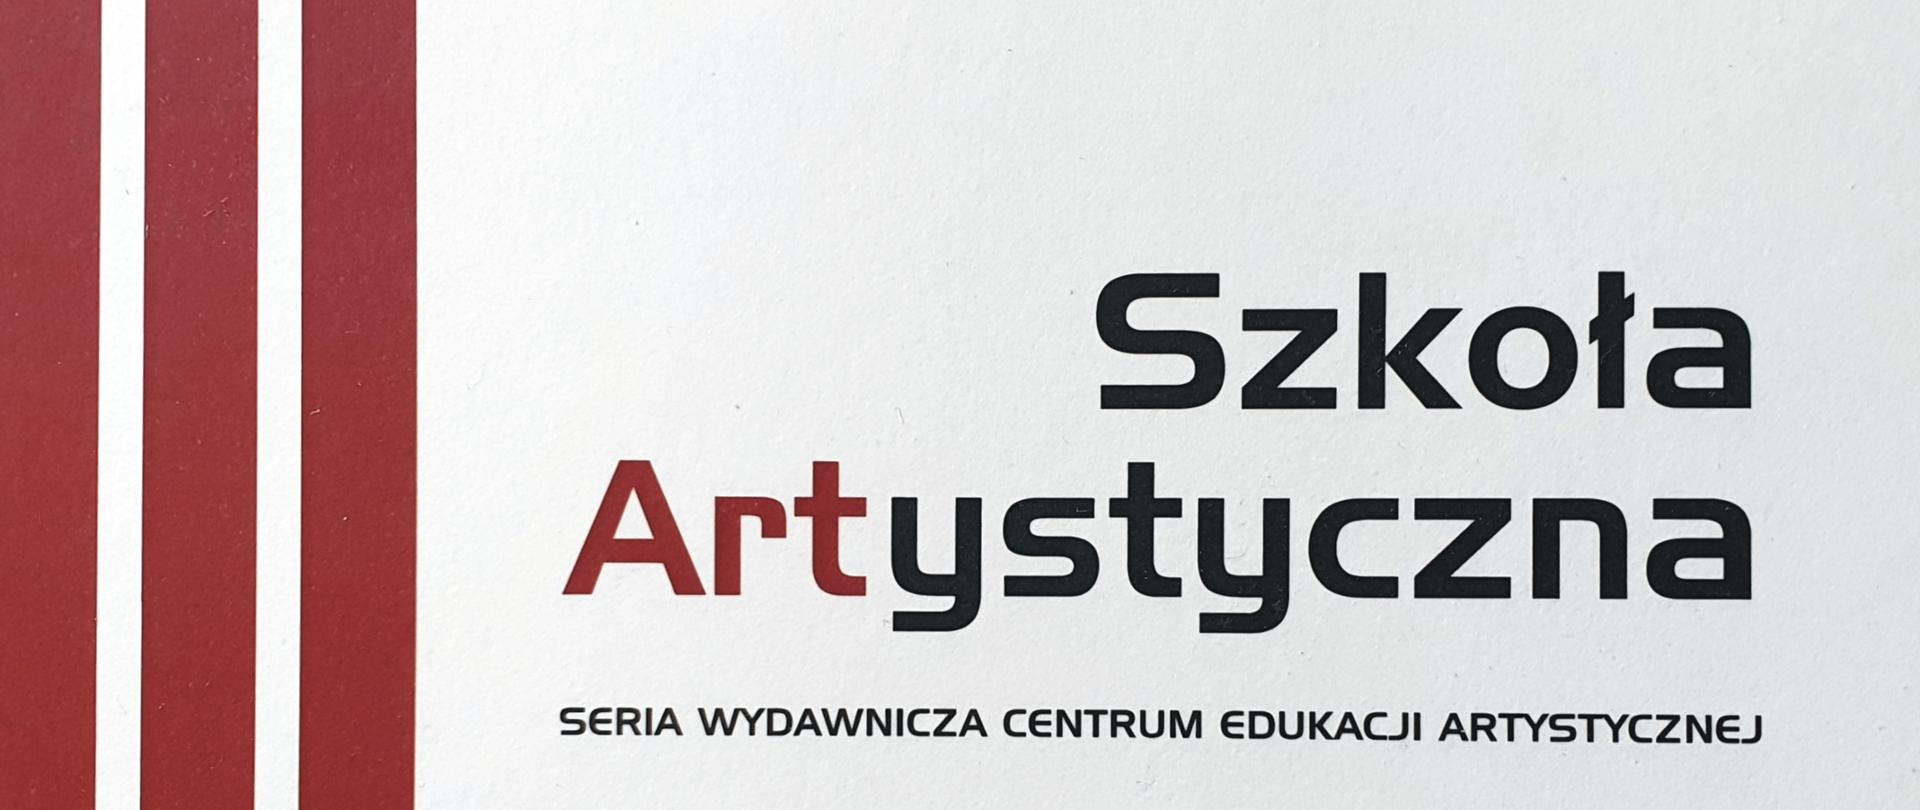 Grafika przedstawia stronę tytułową czasopisma "Szkoła Artystyczna". Centralnie na białym tle znajduje się napis Szkoła Artystyczna. Napis wykonany jest w kolorze czarnym. Litery "Art" są w kolorze brązowym.